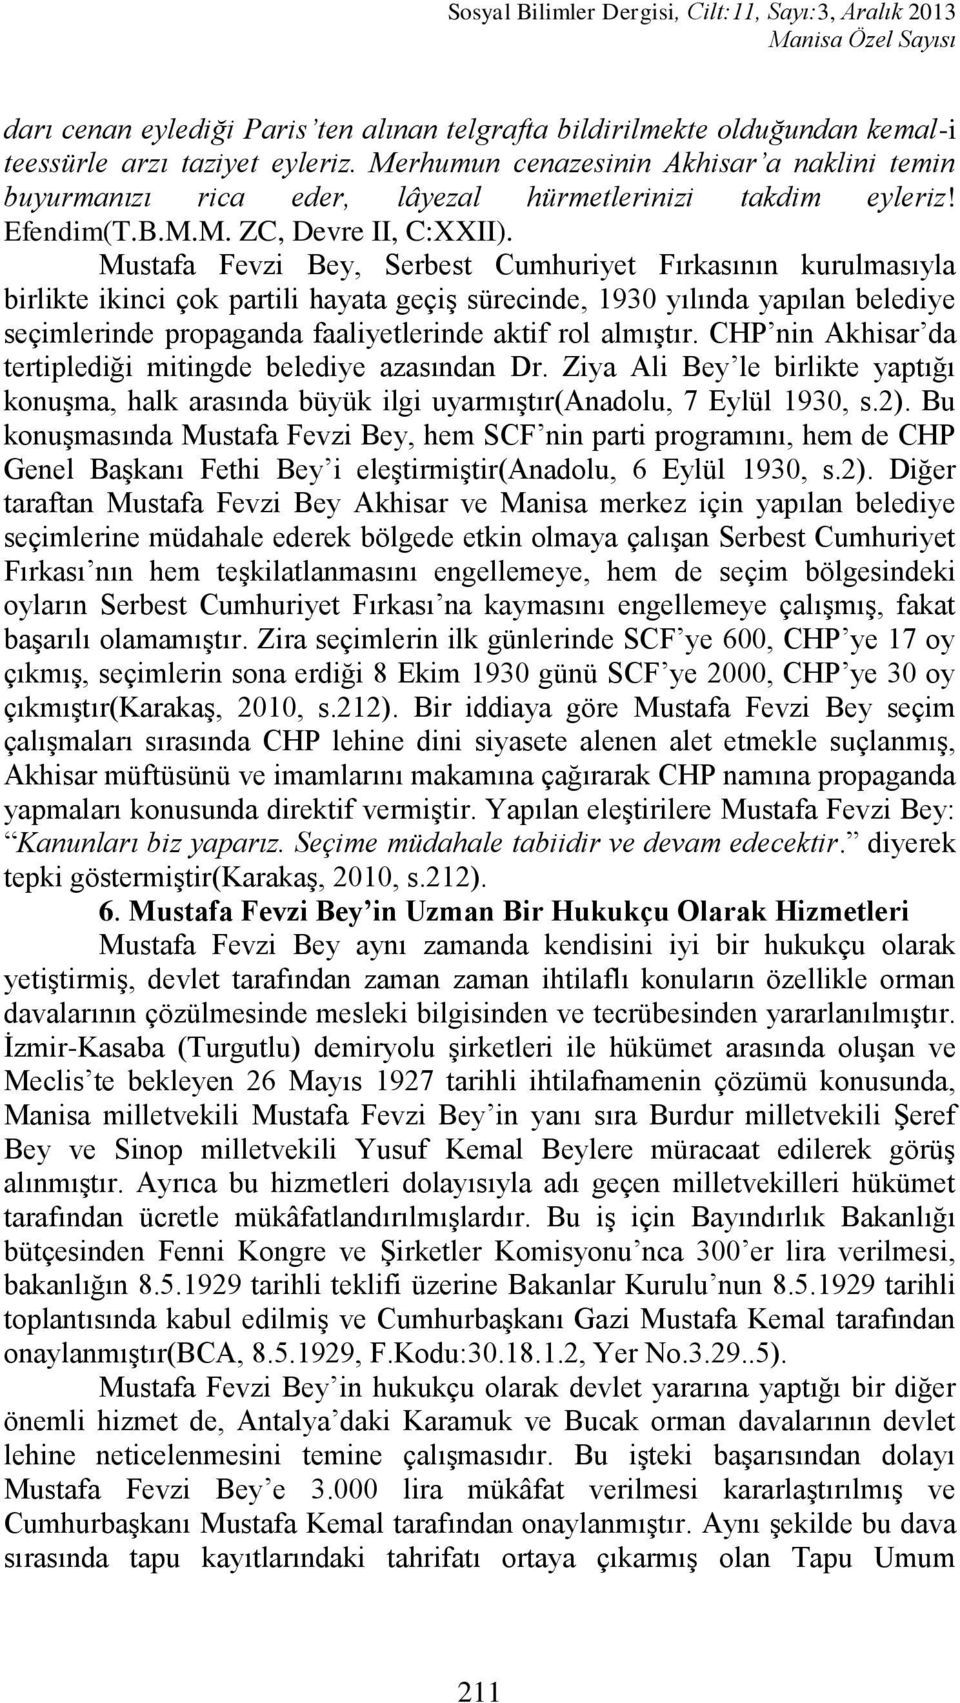 Mustafa Fevzi Bey, Serbest Cumhuriyet Fırkasının kurulmasıyla birlikte ikinci çok partili hayata geçiģ sürecinde, 1930 yılında yapılan belediye seçimlerinde propaganda faaliyetlerinde aktif rol